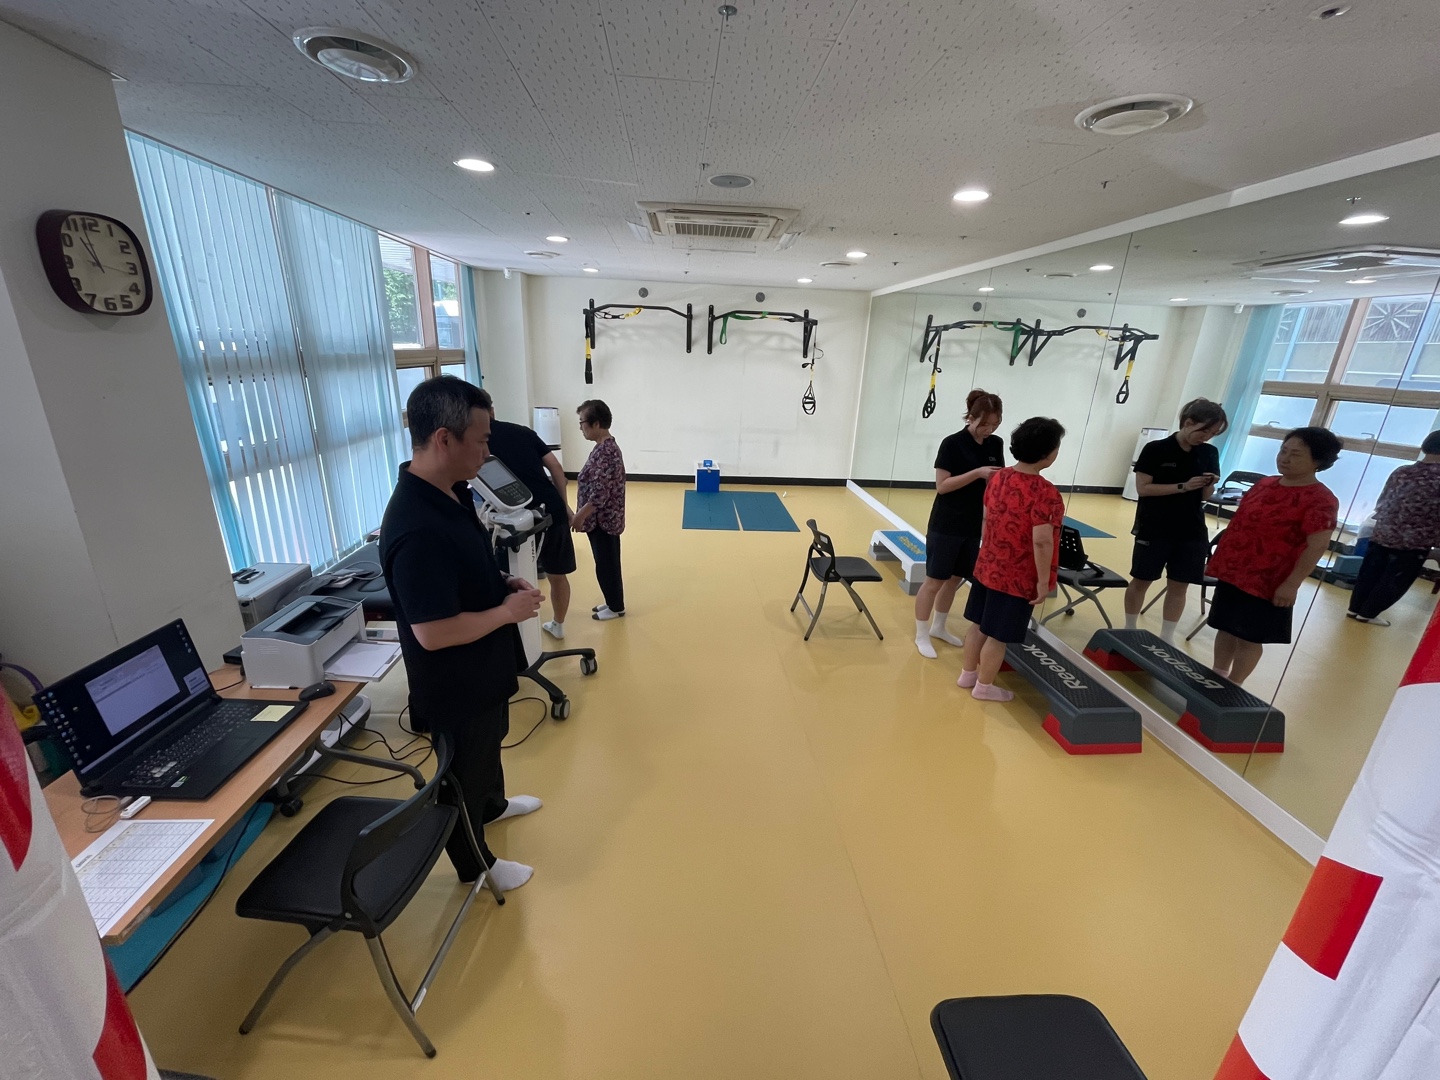 서울곰두리체육센터 장애인체력인증센터 체력측정 및 운동처방 